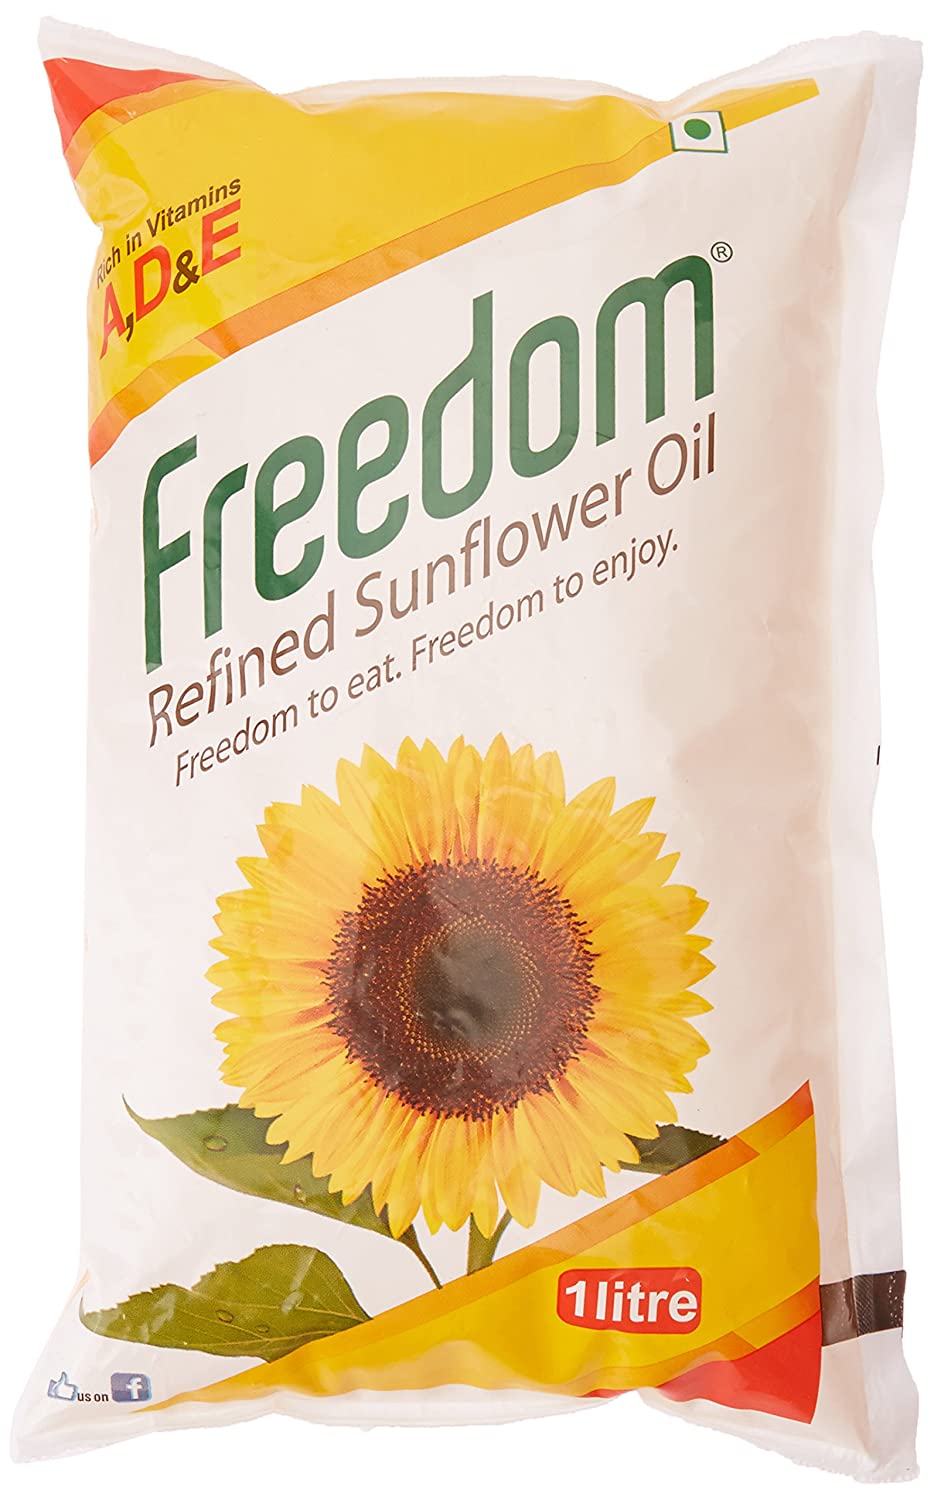 Freedom Refined Sunflower Oil, 1Litre